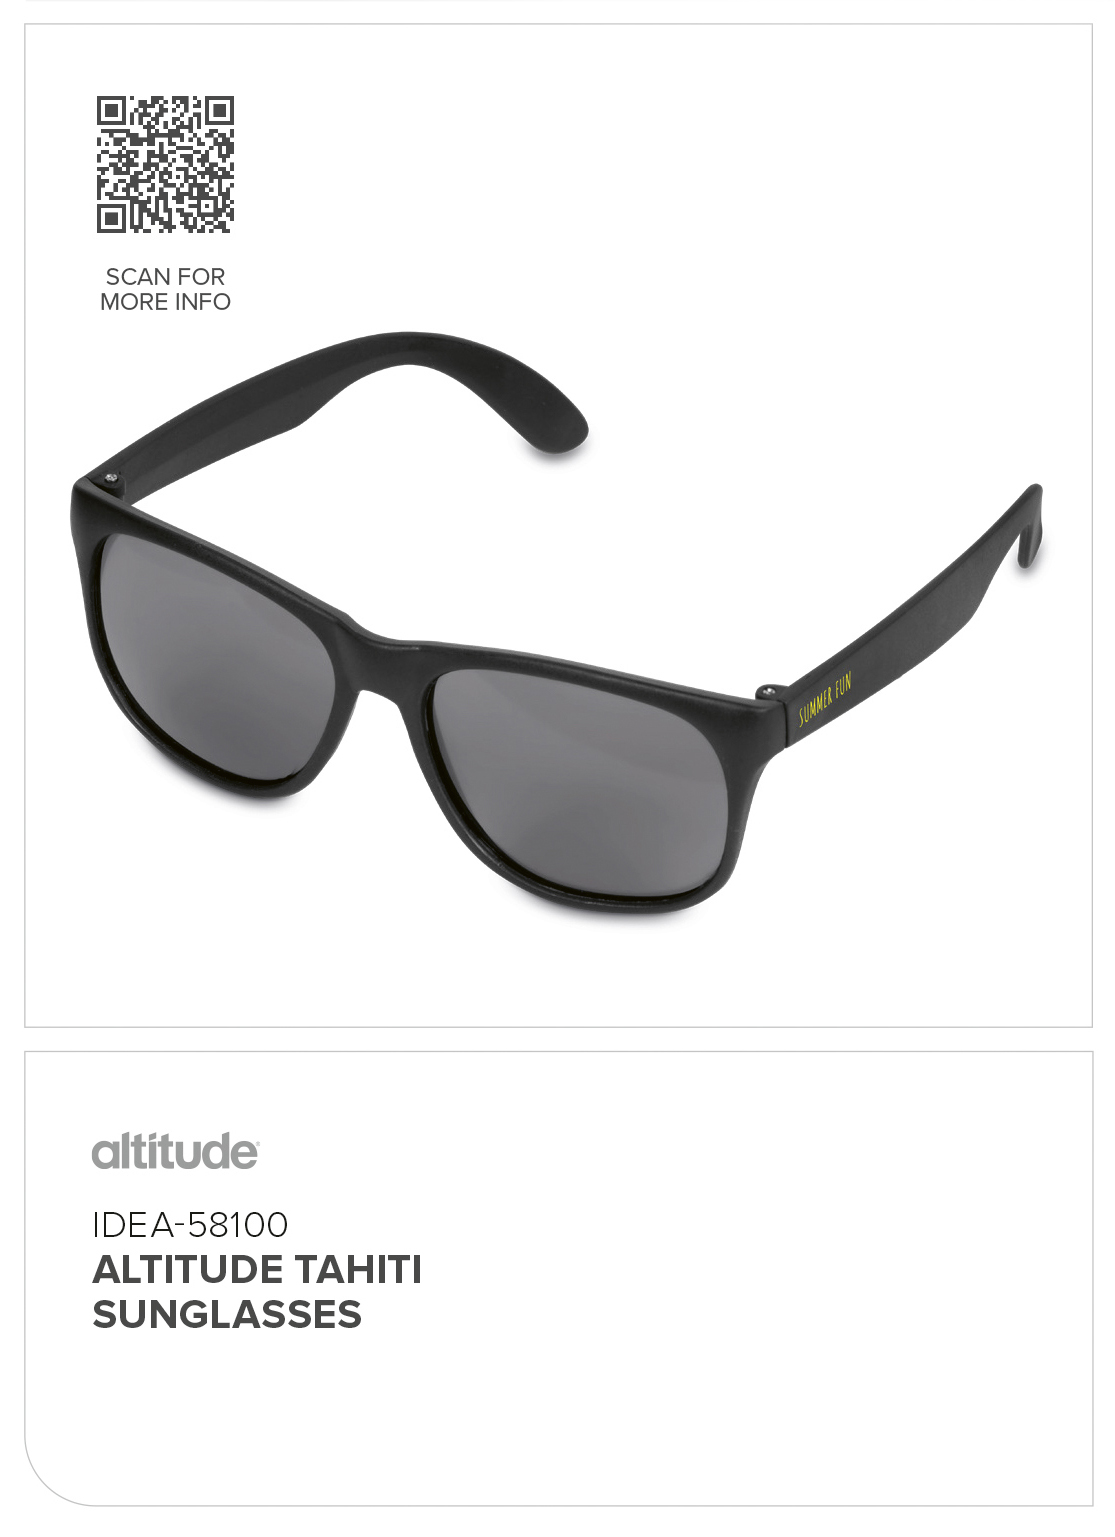 Altitude Tahiti Sunglasses